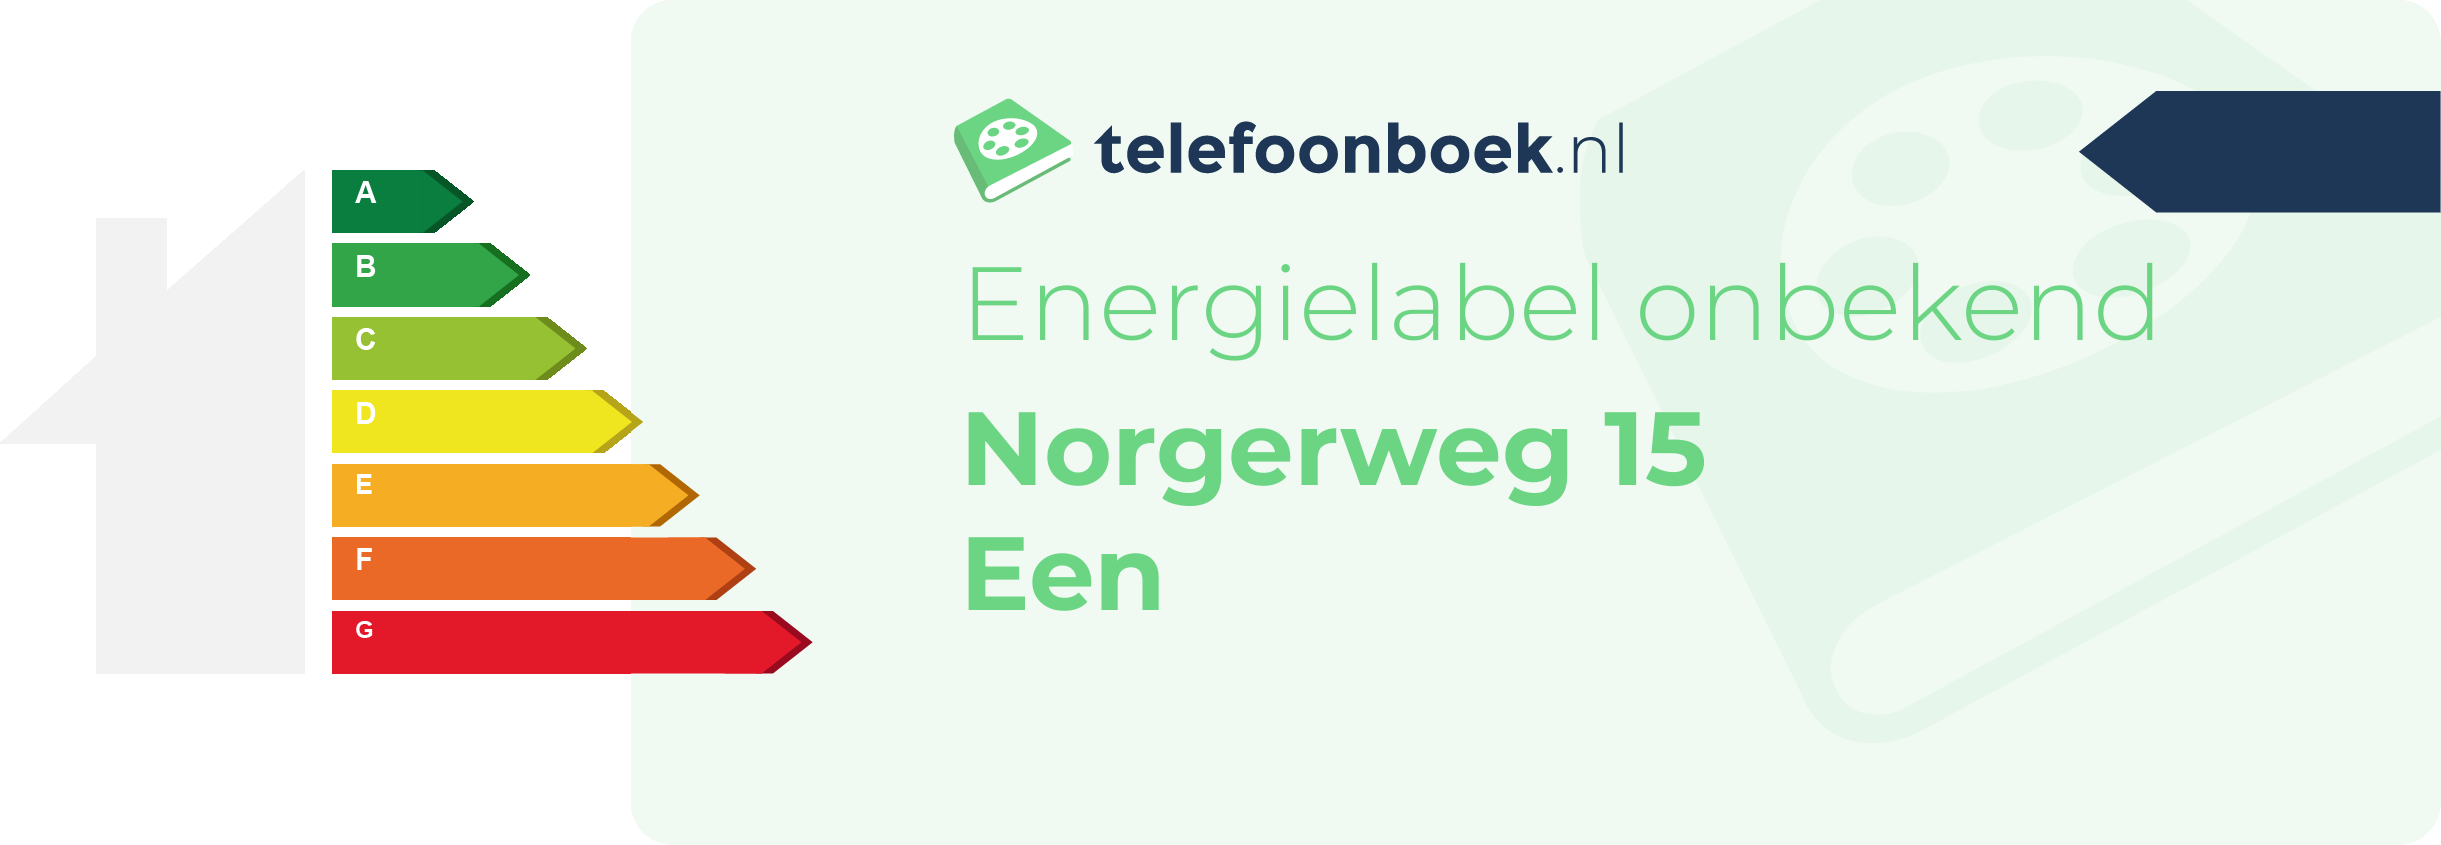 Energielabel Norgerweg 15 Een